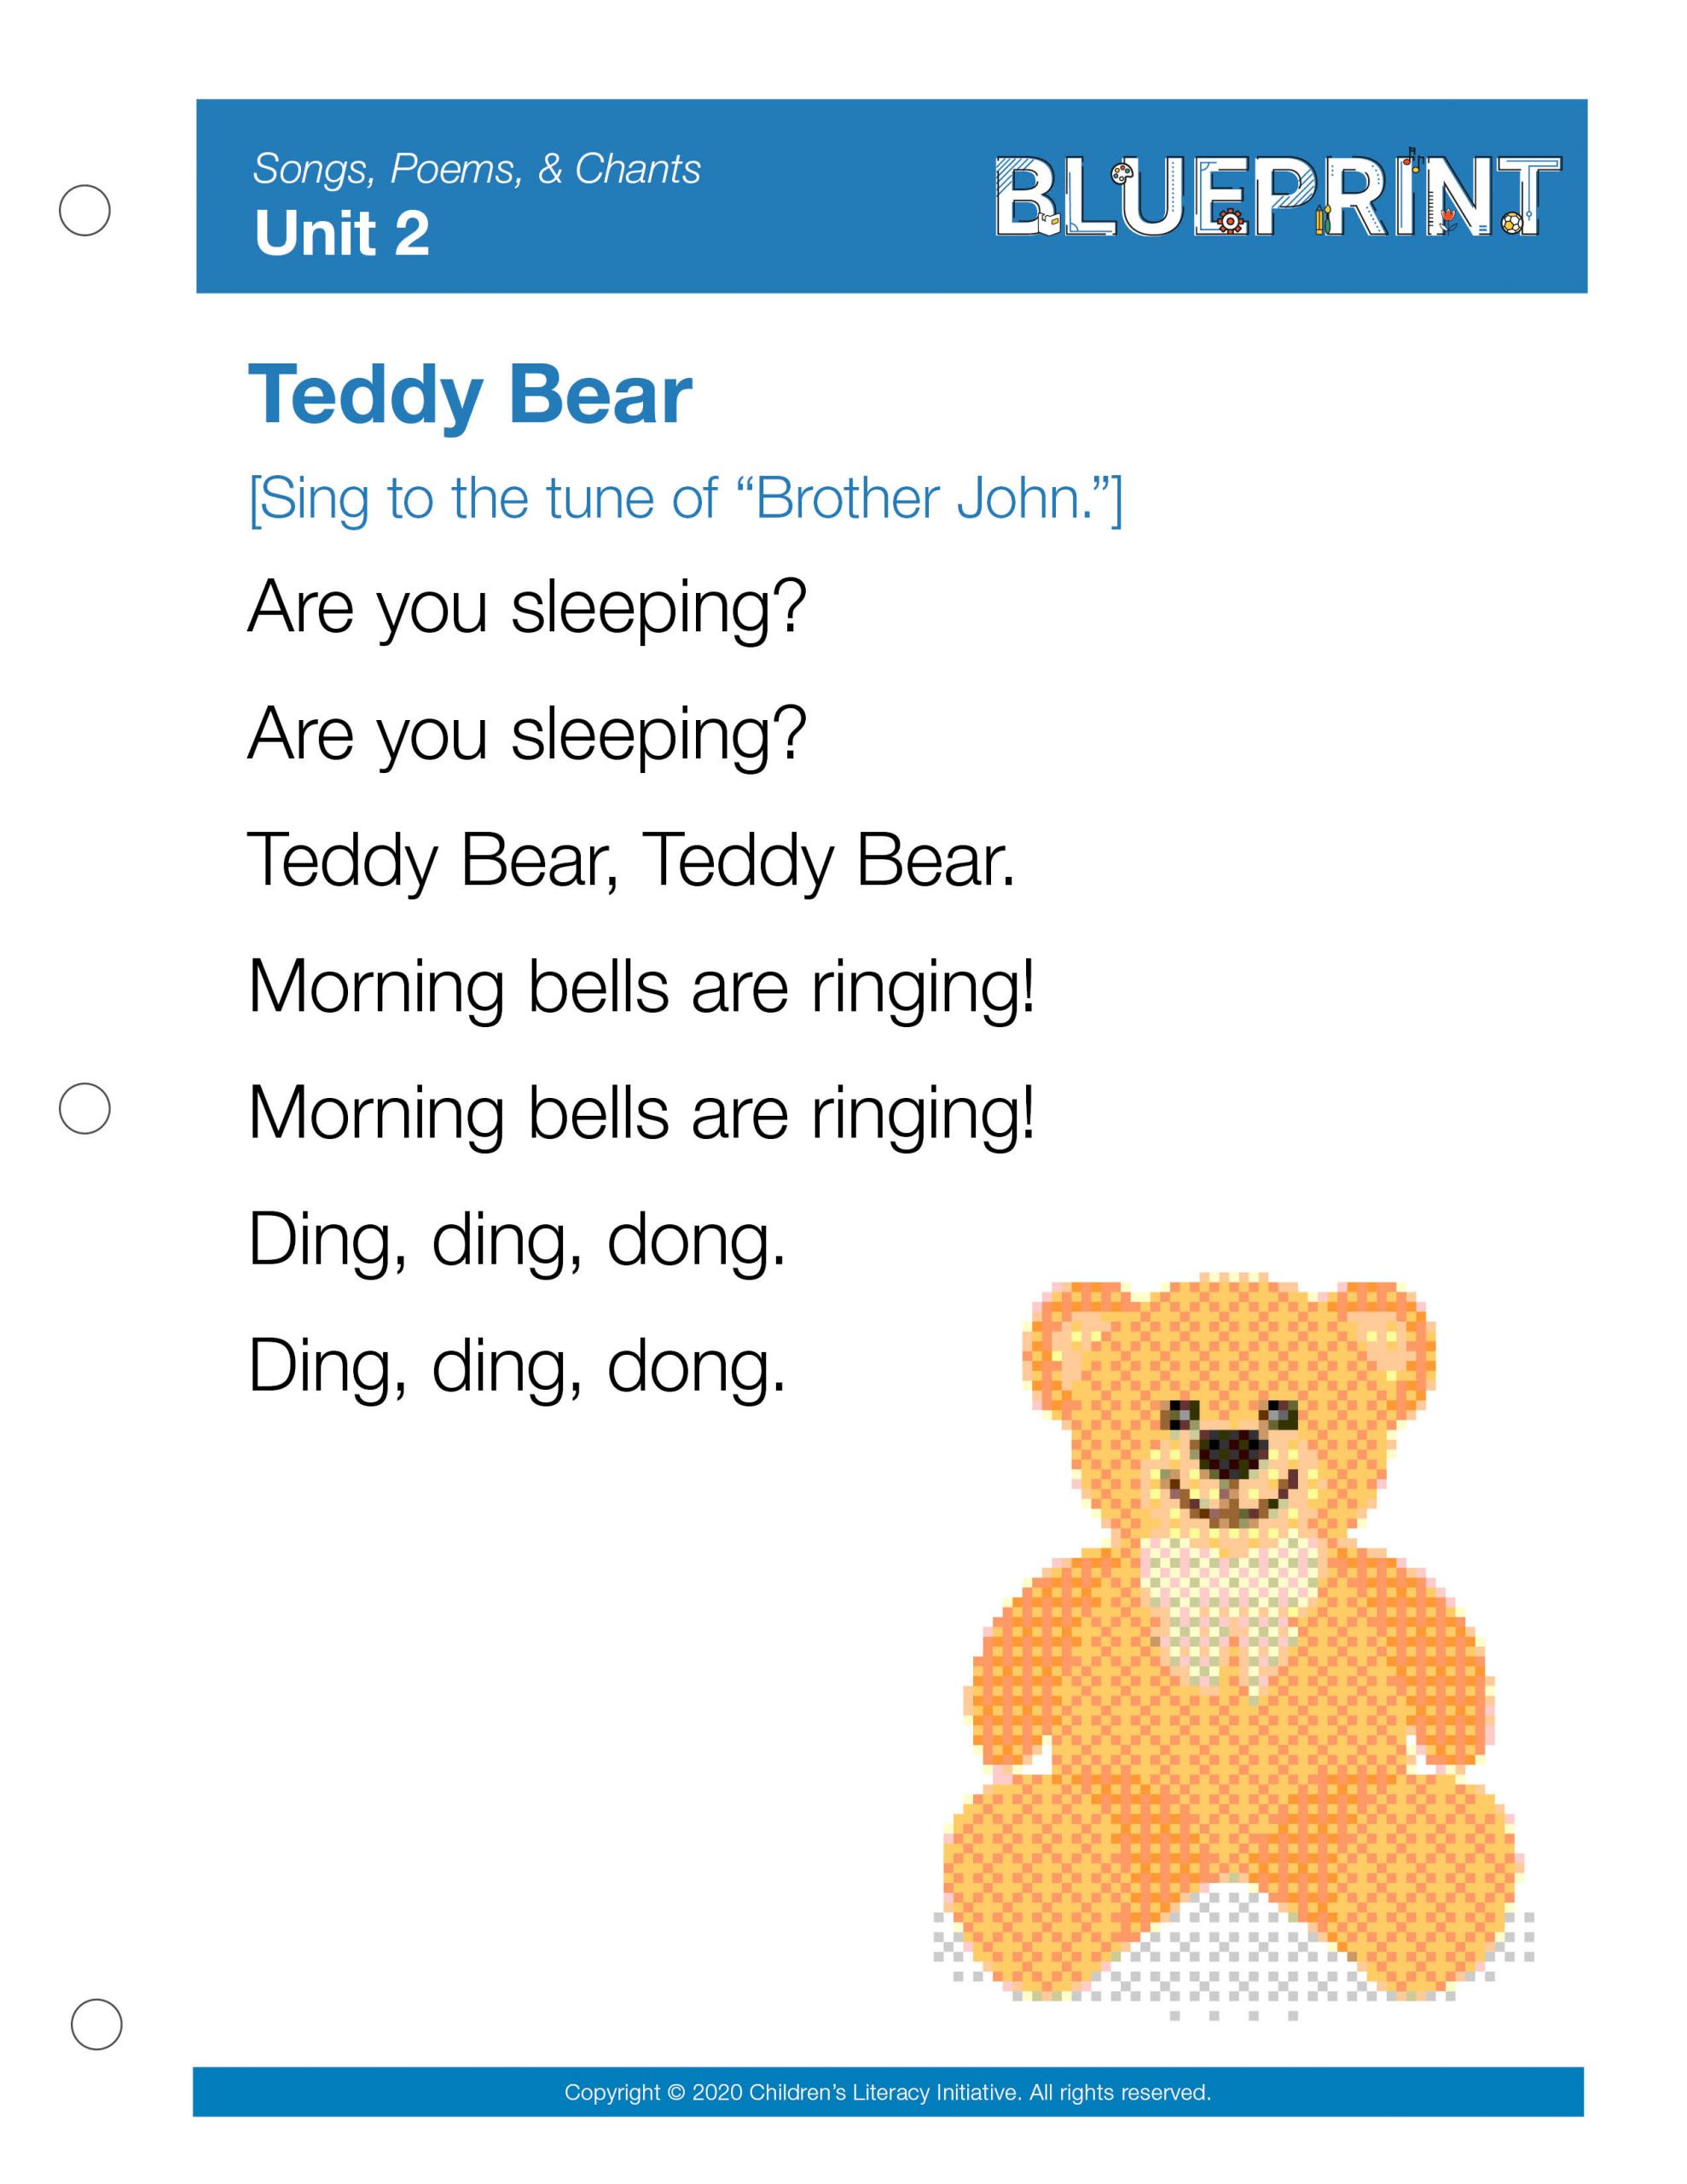 Teddy Bear Week 4